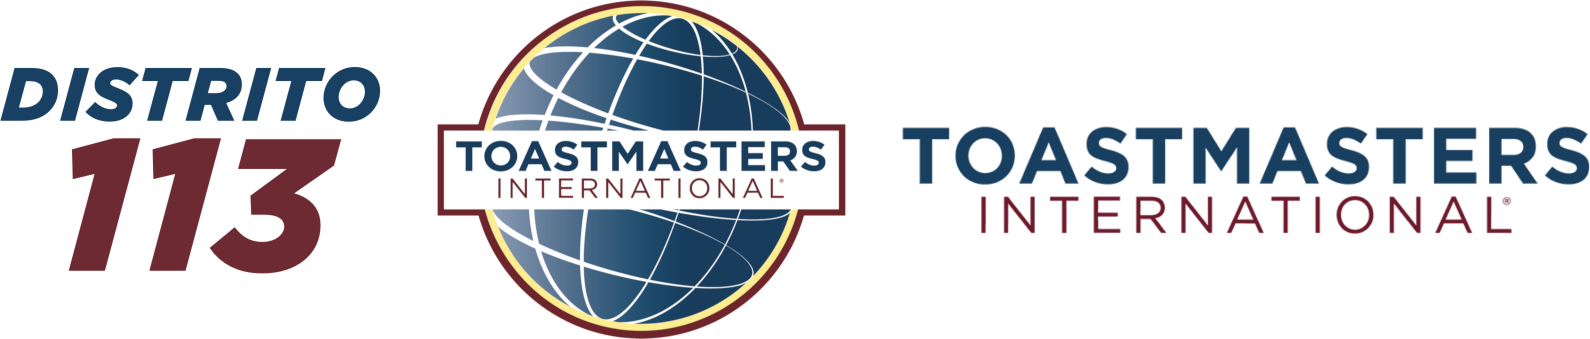 Distrito 113 de Toastmasters International®